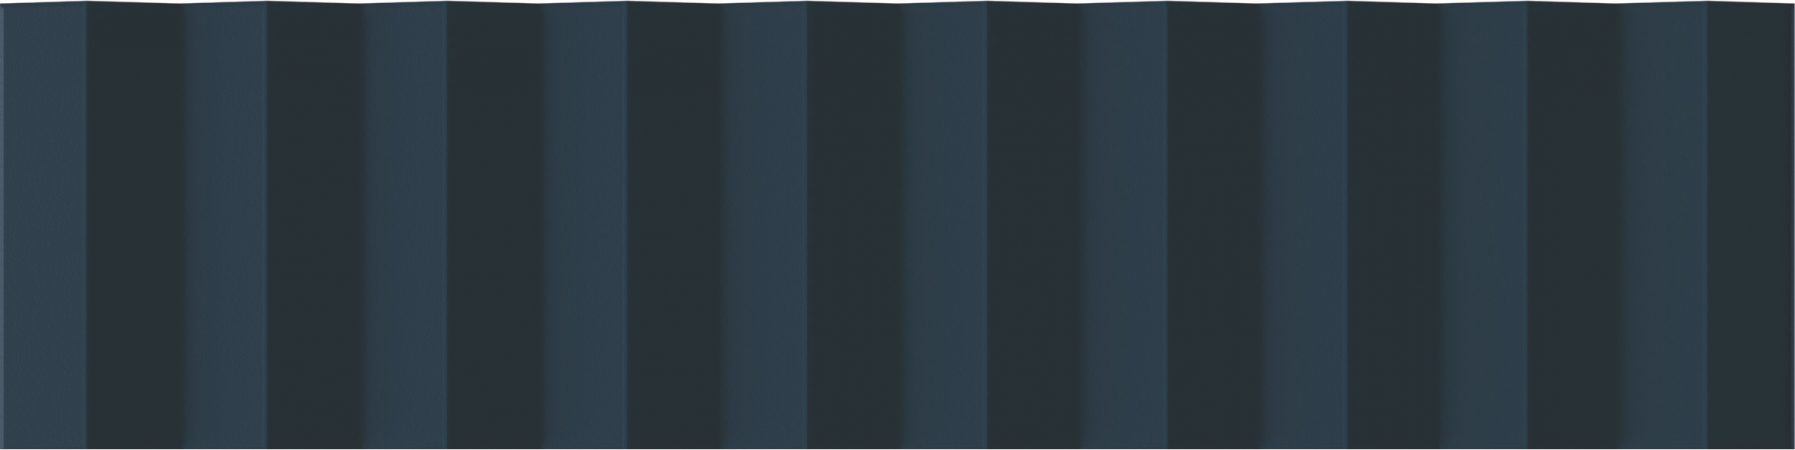 Керамическая плитка Wow Twin Peaks Up Aegean Blue 131548, цвет синий, поверхность матовая 3d (объёмная), под кирпич, 75x300